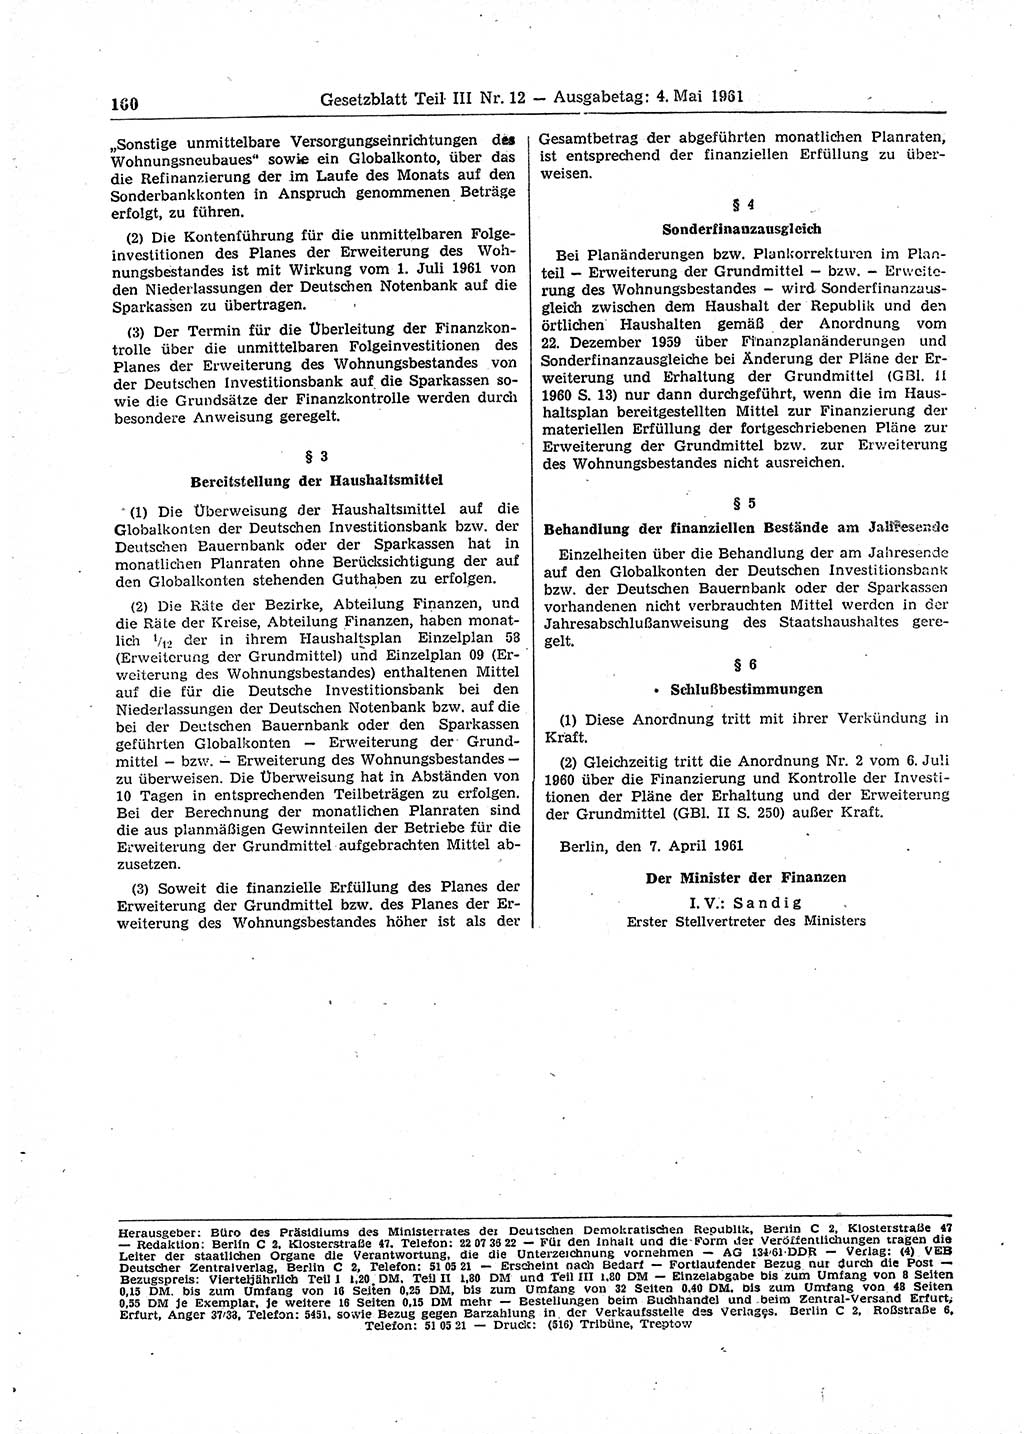 Gesetzblatt (GBl.) der Deutschen Demokratischen Republik (DDR) Teil ⅠⅠⅠ 1961, Seite 160 (GBl. DDR ⅠⅠⅠ 1961, S. 160)